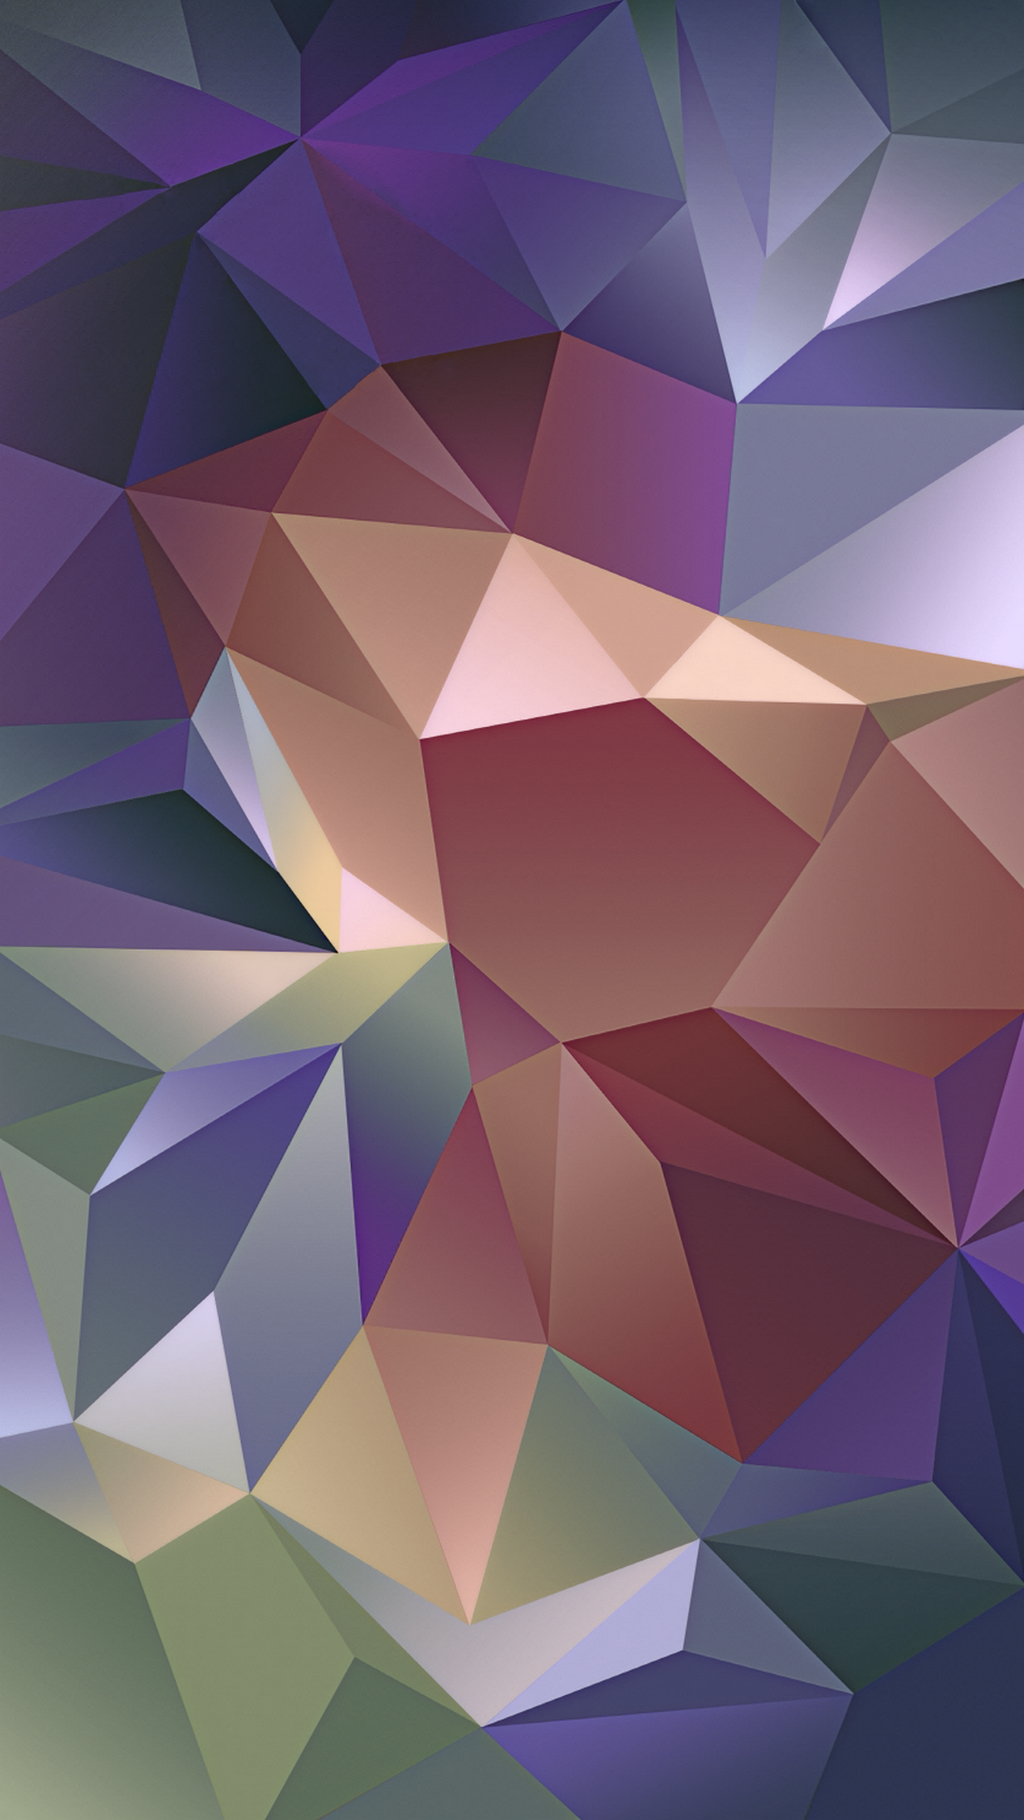 모바일 삼성 귀여운 배경 화면,보라색,제비꽃,무늬,삼각형,디자인